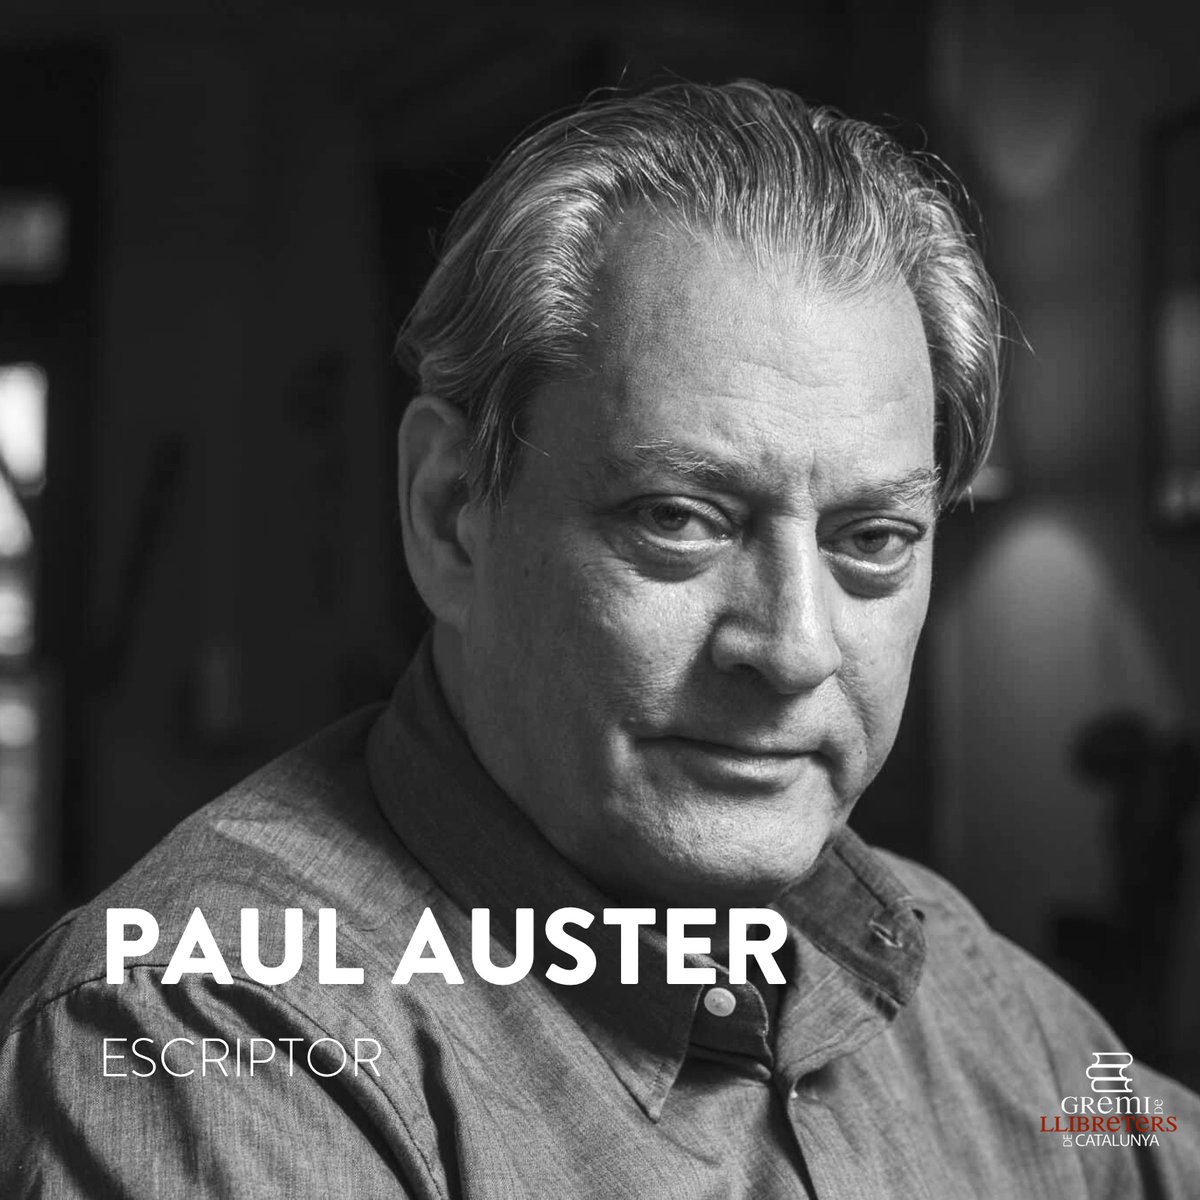 Des de @llibreterscat lamentem la mort de l'escriptor nord-americà Paul Auster, als 77 anys. Fou un dels escriptors més cèlebres dels últims anys, autor de la famosa 'Trilogia de Nova York'. Descansi en pau.